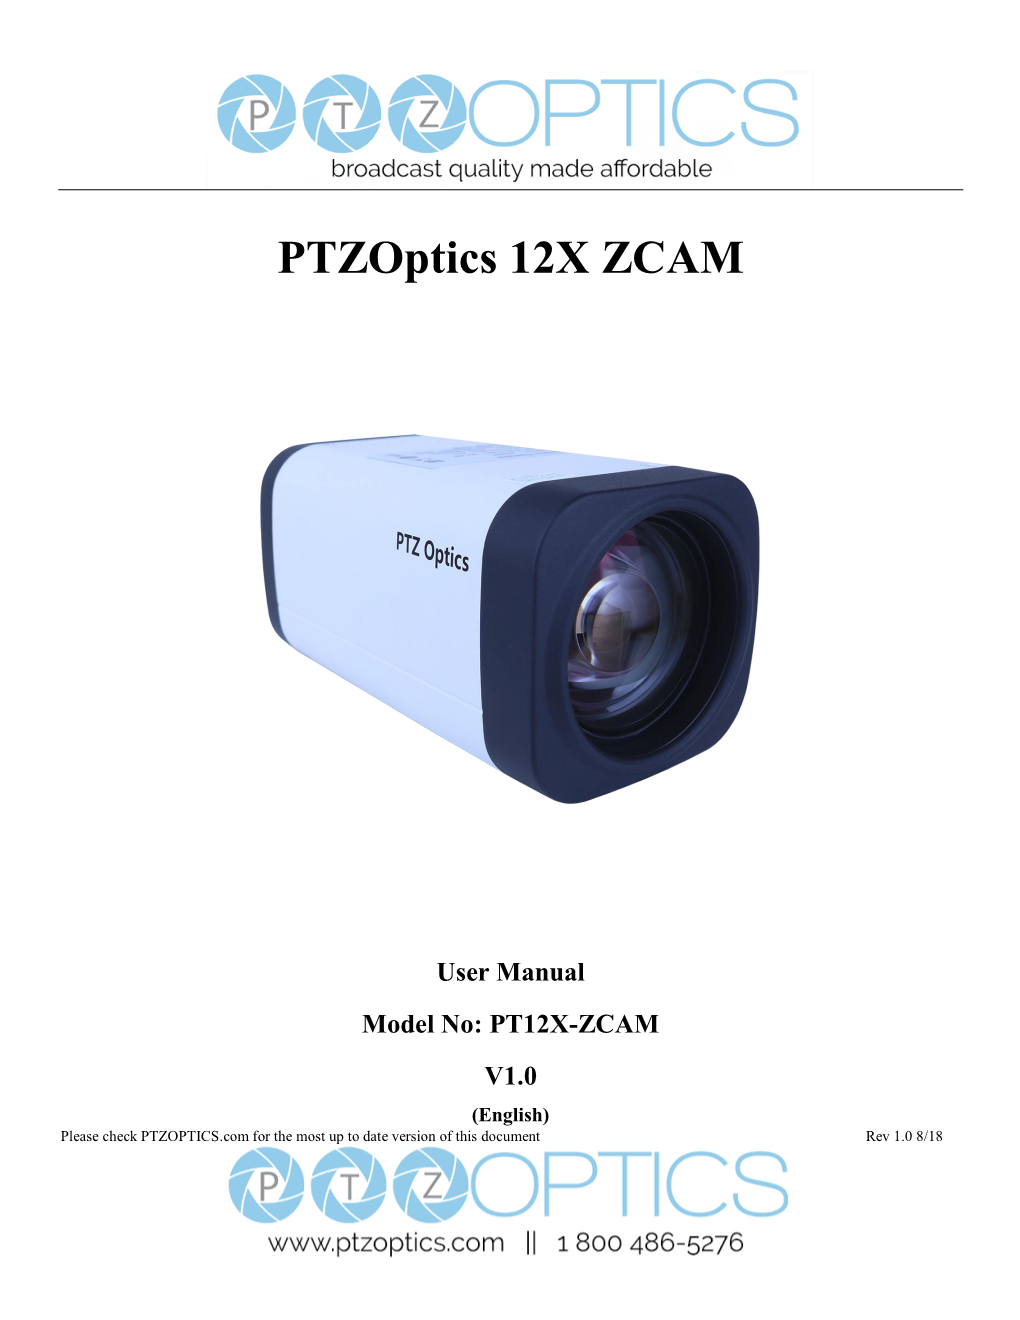 Ptzoptics 12X ZCAM